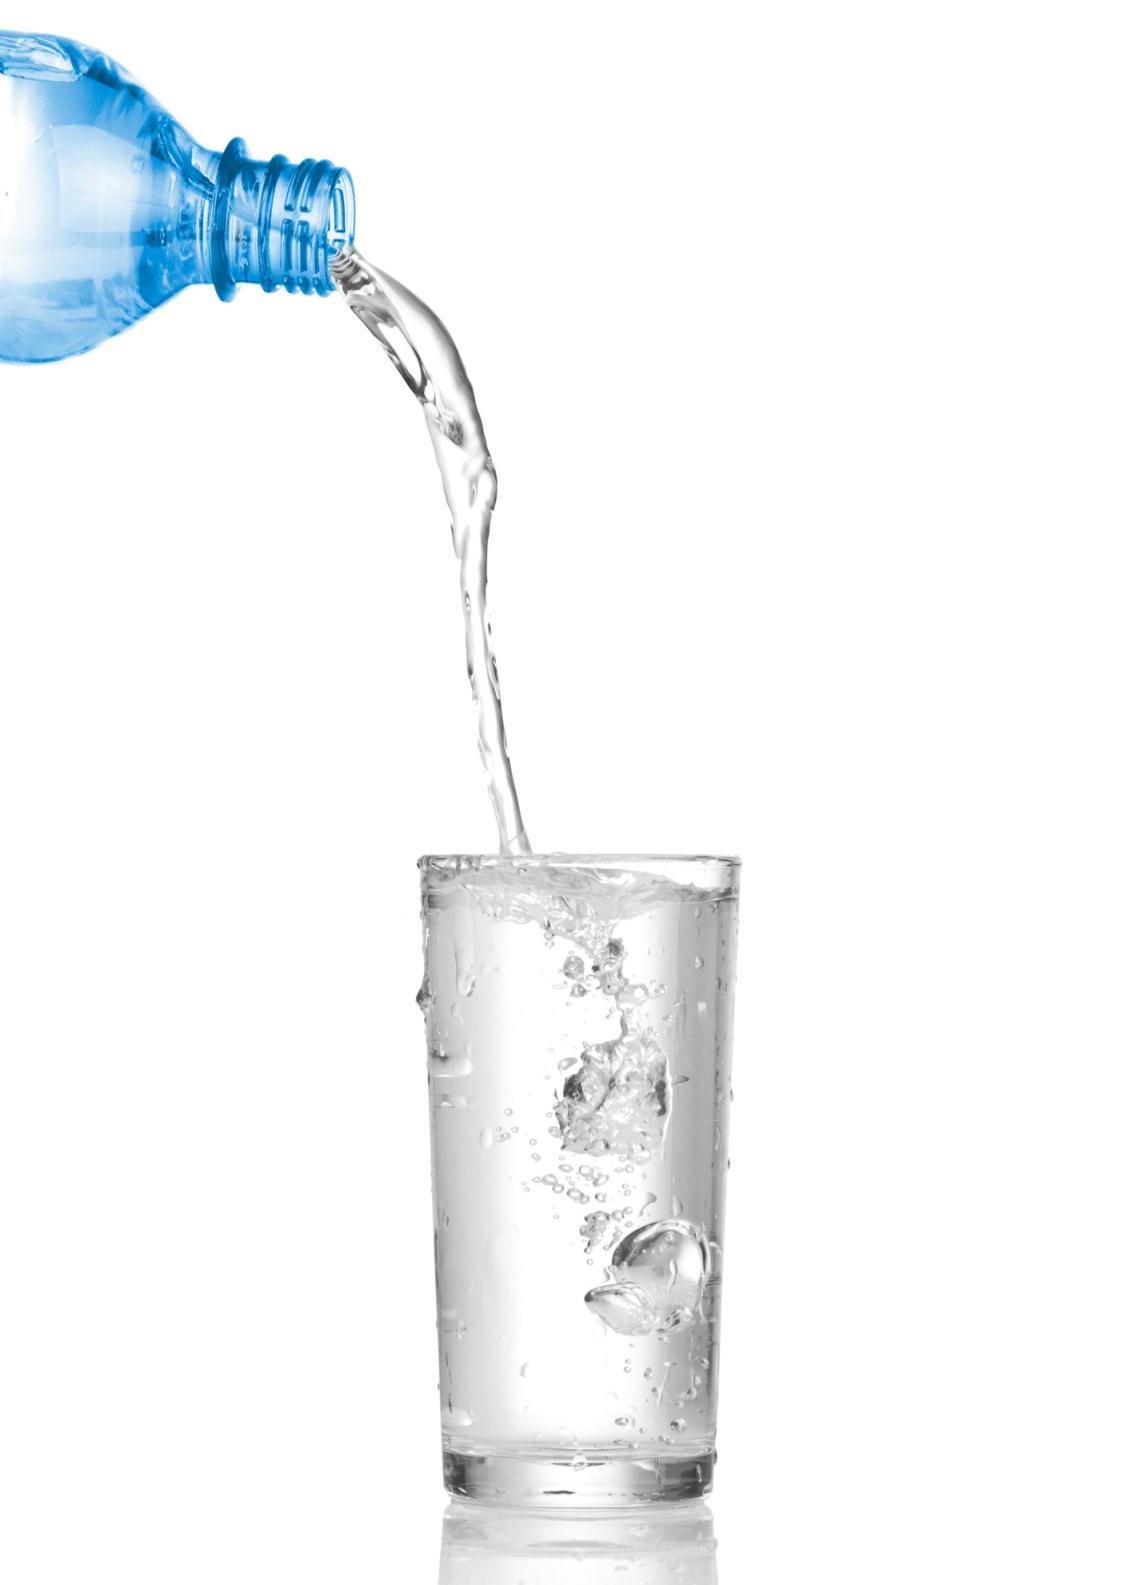 Cómo se regula el contenido de agua corporal Qué sucede si bebemos más de lo que necesitamos?